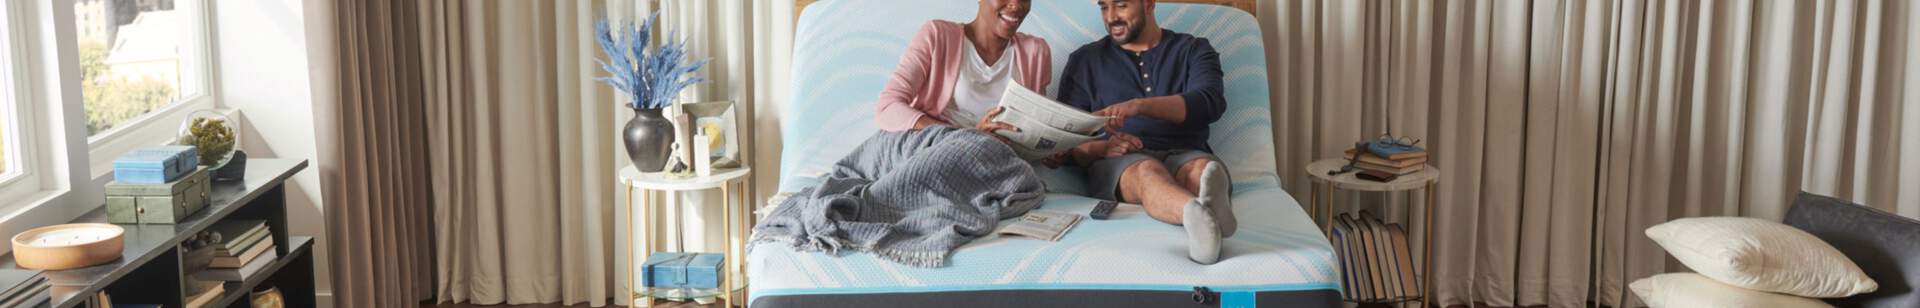 People laying on a tempur-pedic mattress laughing